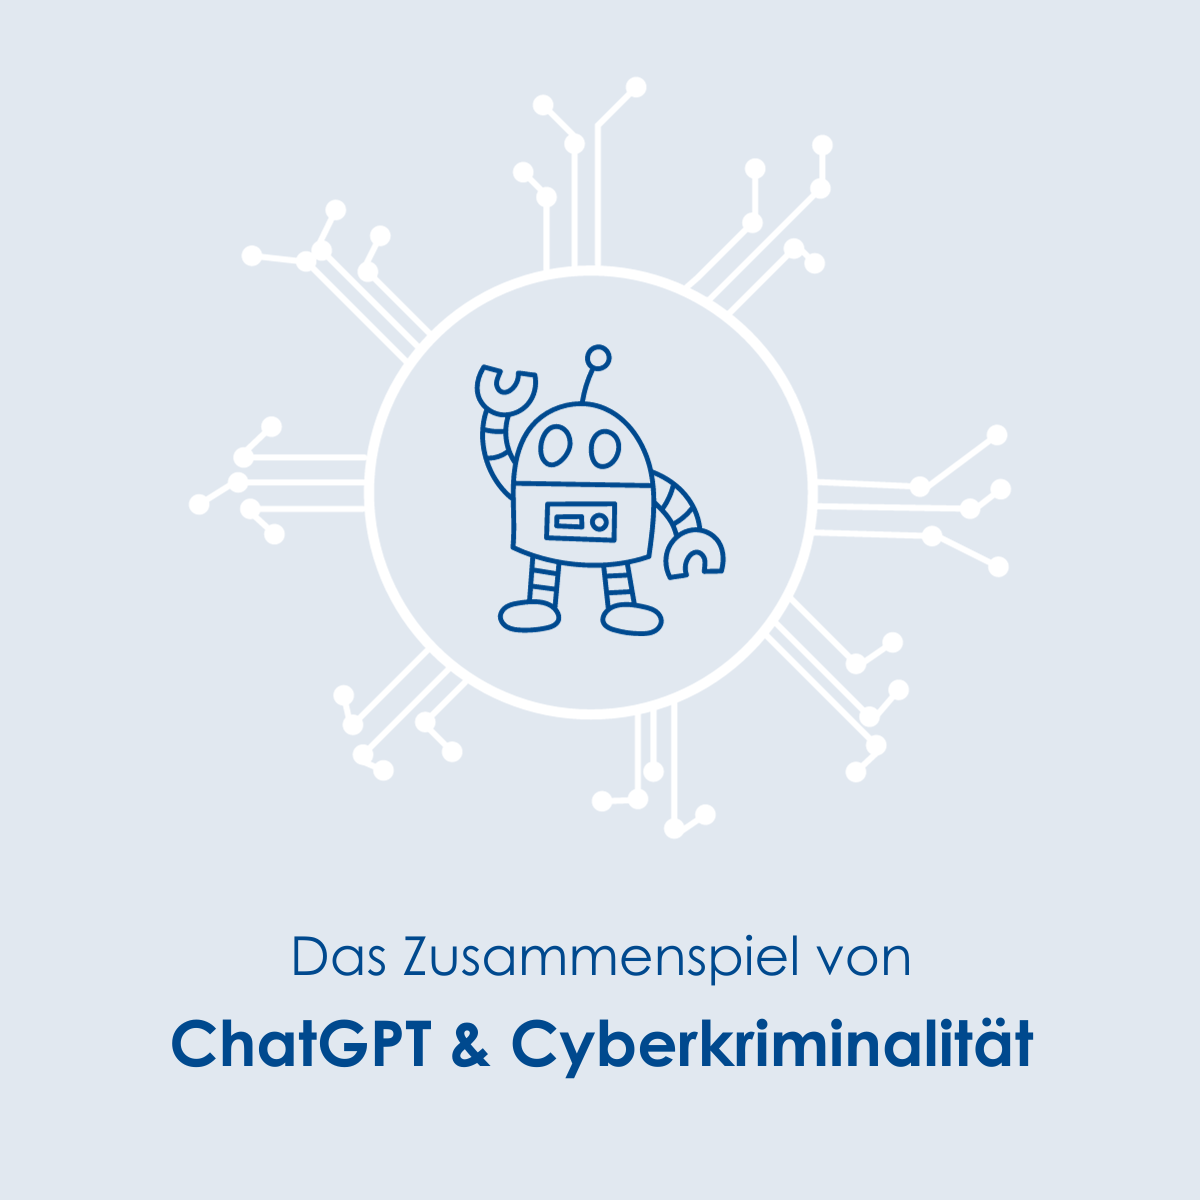 ChatGPT & Cyberkriminalität